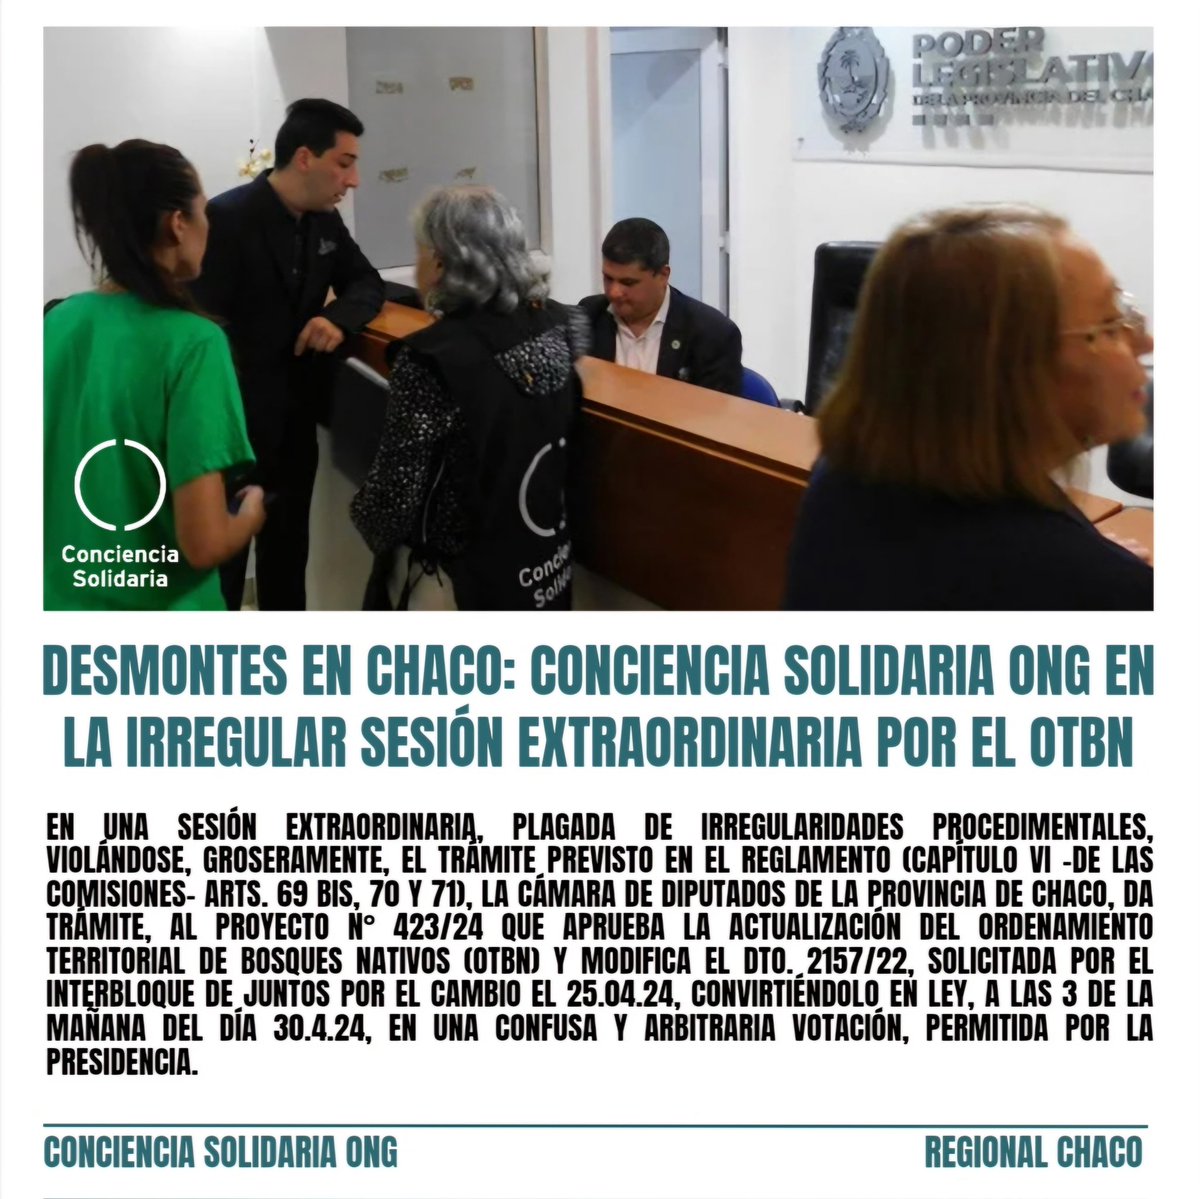 #CámaradeDiputados, #ProvinciadeChaco, aprueba la actualización del #OrdenamientoTerritorialdeBosquesNativos (#OTBN), a las 3 de la mañana del día 30.4.24, en una confusa y arbitraria votación, permitida por la presidencia.

#ConcienciaSolidariaONG 
@ConSol_ONG 

#Chaco #Desmonte